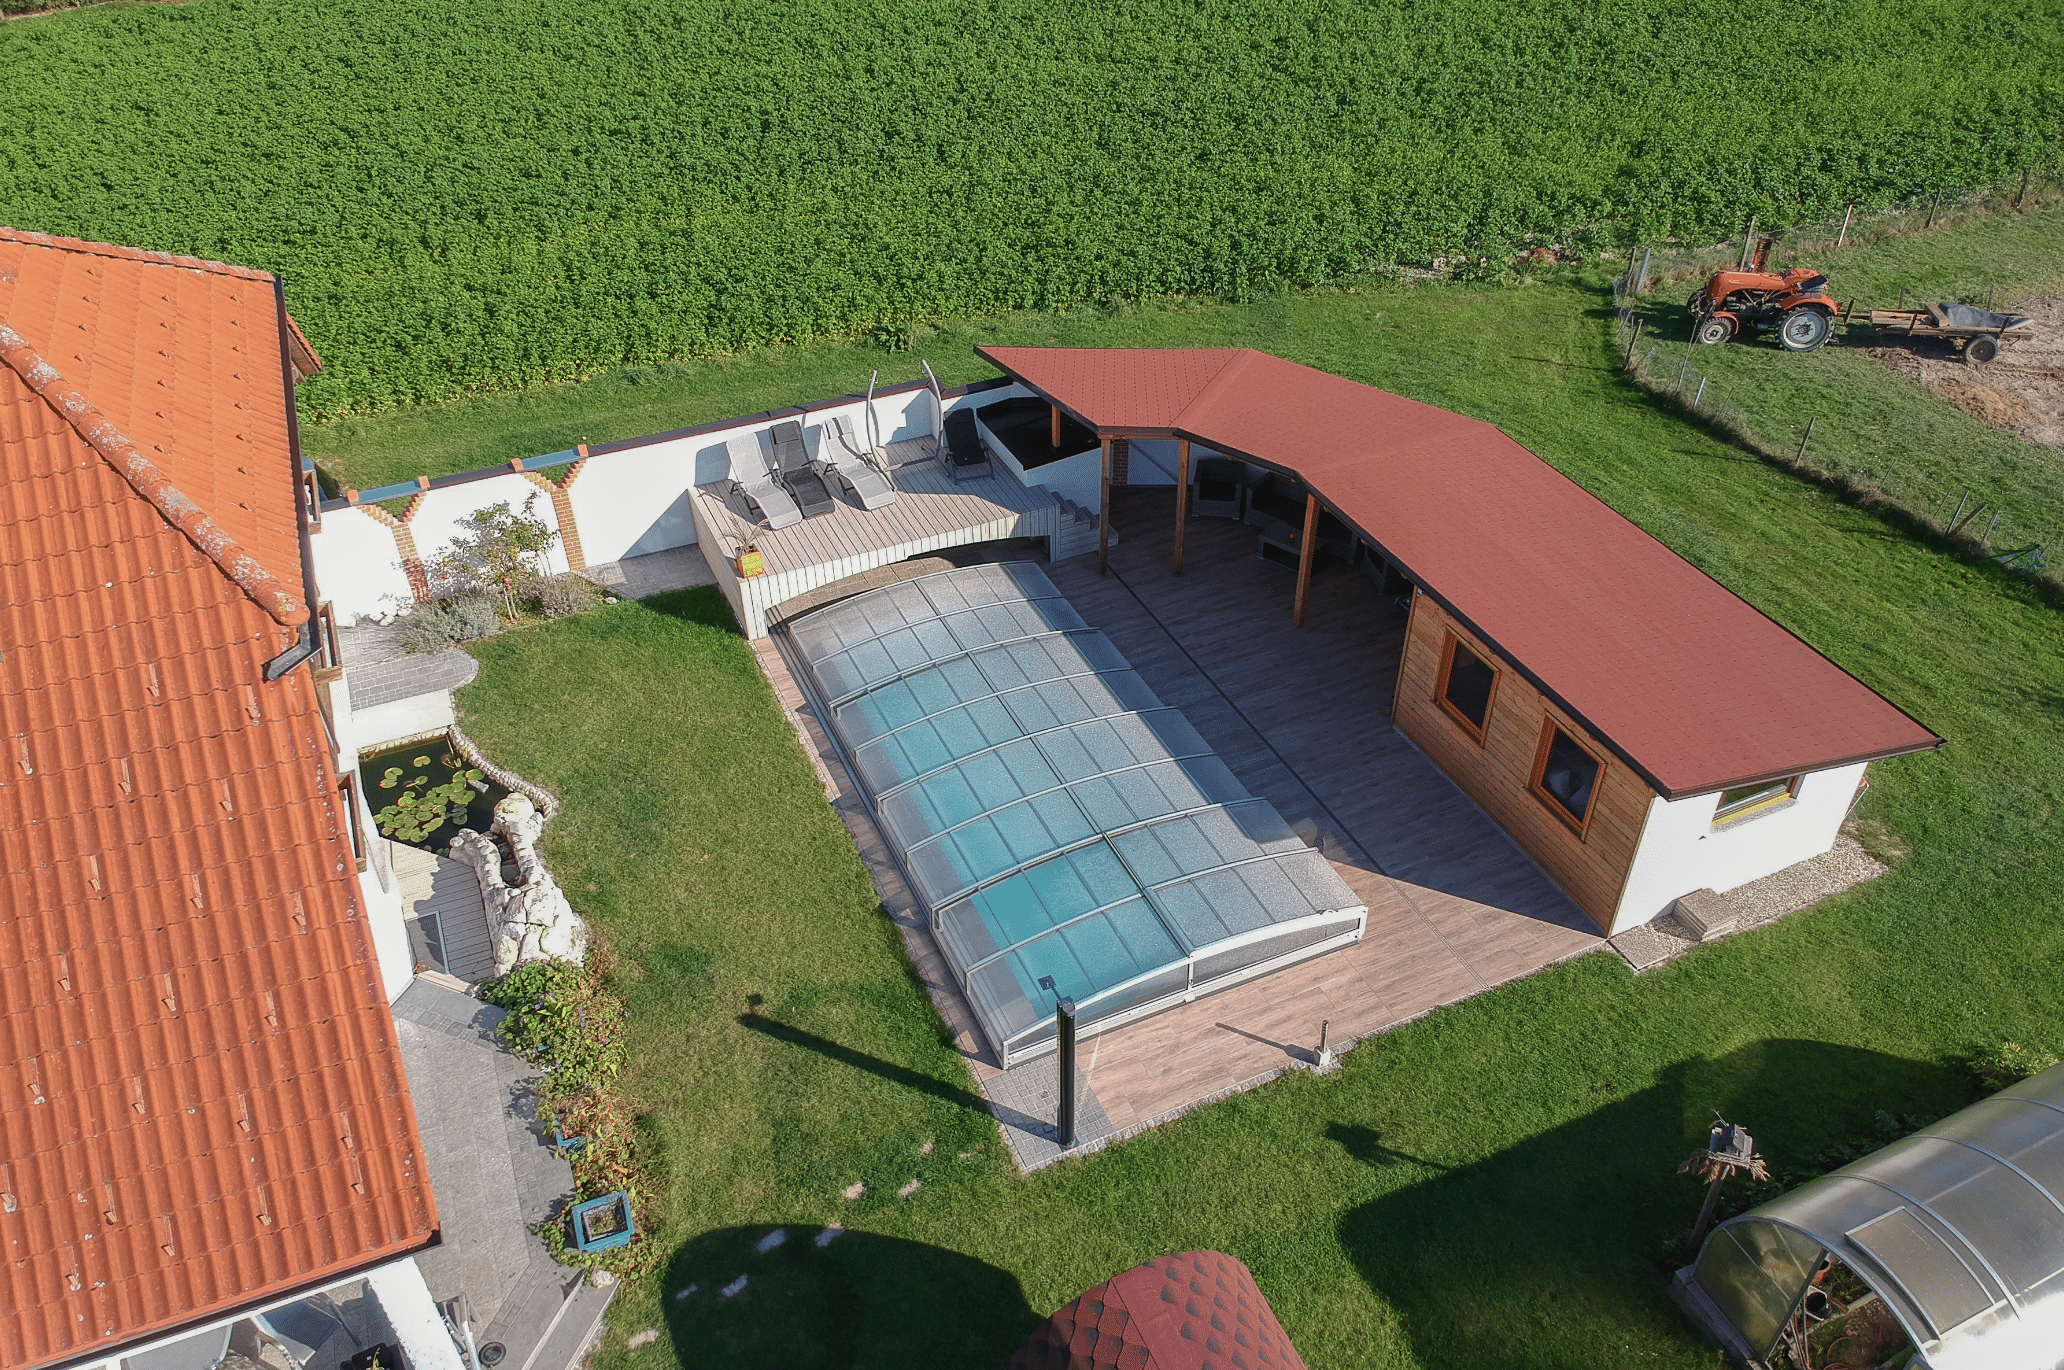 Friedrich Reitinger Schwimmbad und Wellness zeigt einen in den Boden eingelassenen, rechteckigen Pool mit einer Poolüberdachung aus Glas in einem schönen Innenhof mit Sonnendeck und Gartenteich.